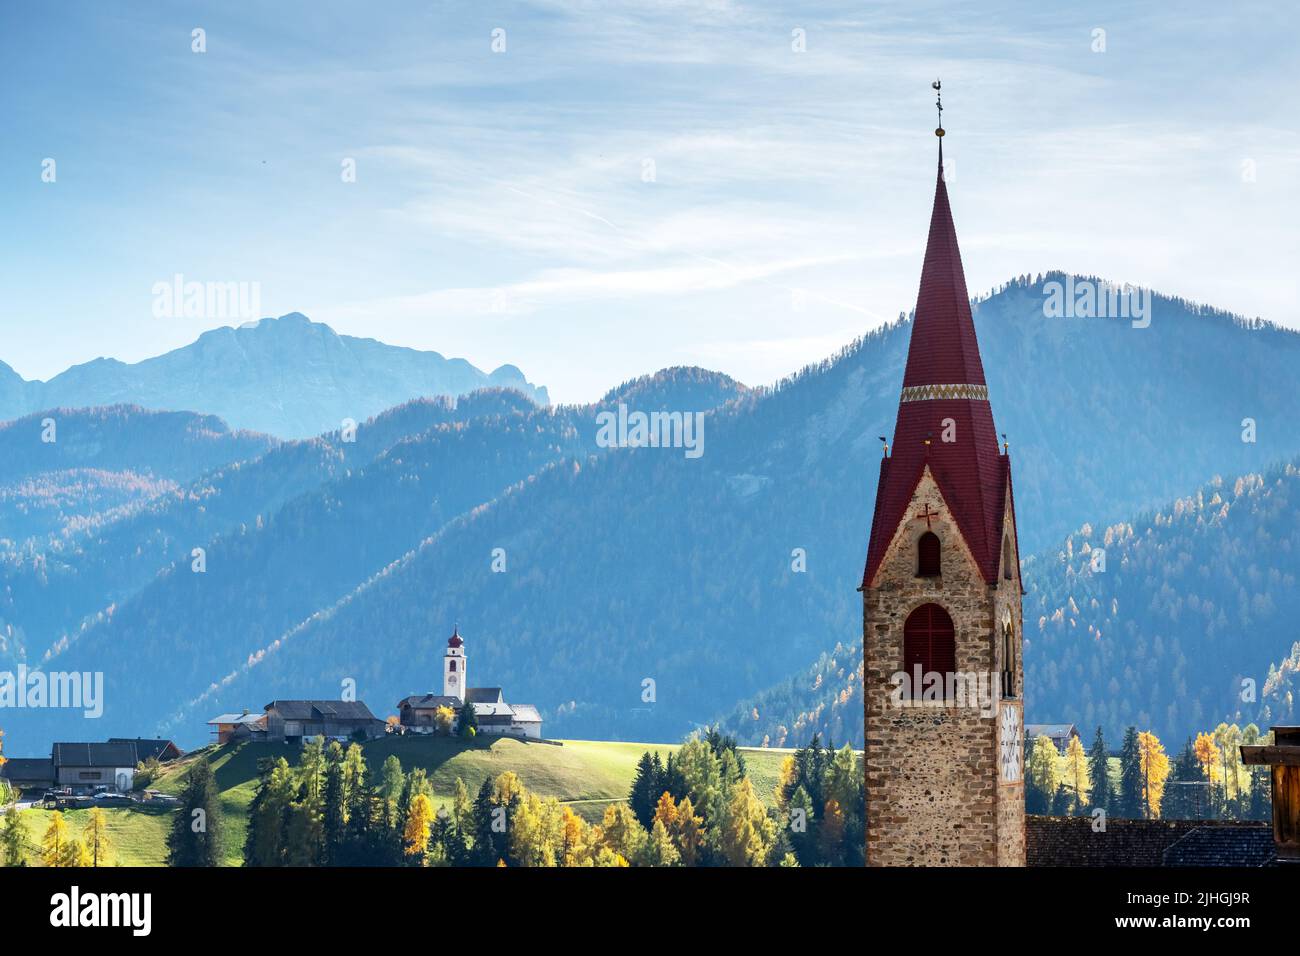 Katholische Kirche Dlijia Da Curt in der Gemeinde Mareo, Provinz Bozen, Südtirol, Italien. Malerische Herbstlandschaft aus den italienischen Dolomiten Stockfoto